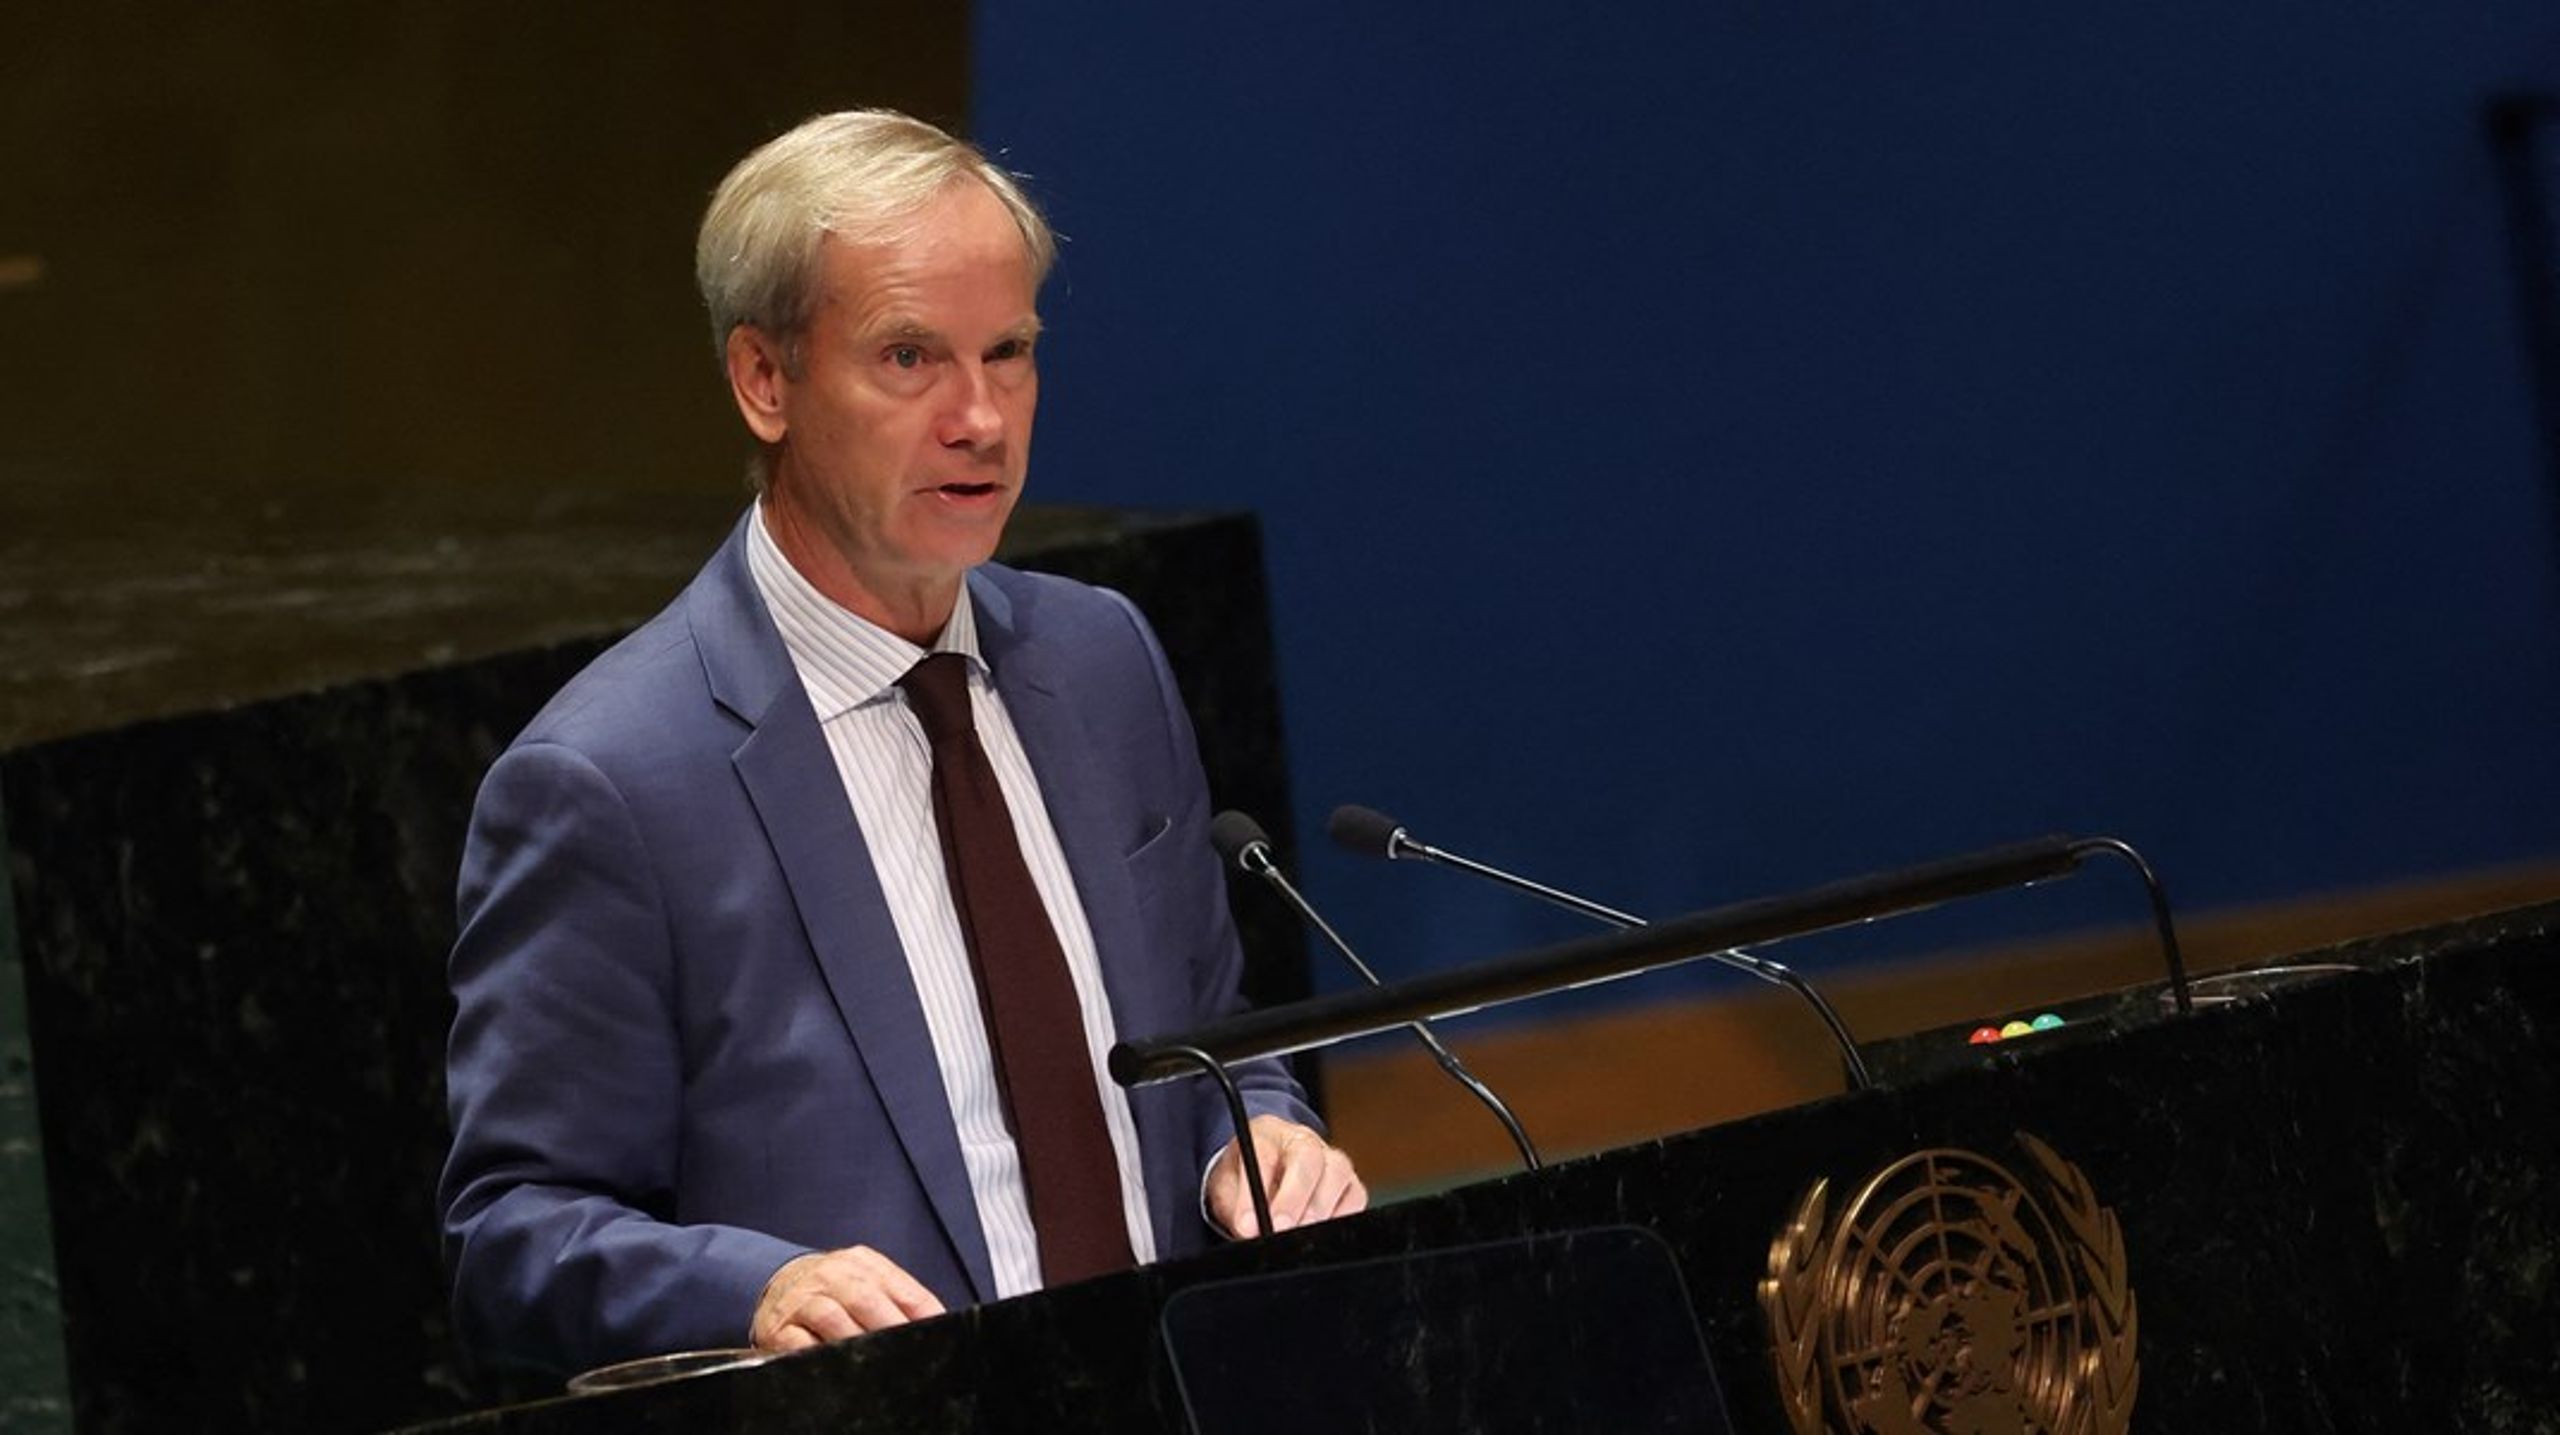 Sjefen for EUs FN-delegasjon, den svenske diplomaten Olof Skoog, blir Ministerrådets spesialrepresentant for menneskerettigheter. Han tiltrer stillingen 1. mars.